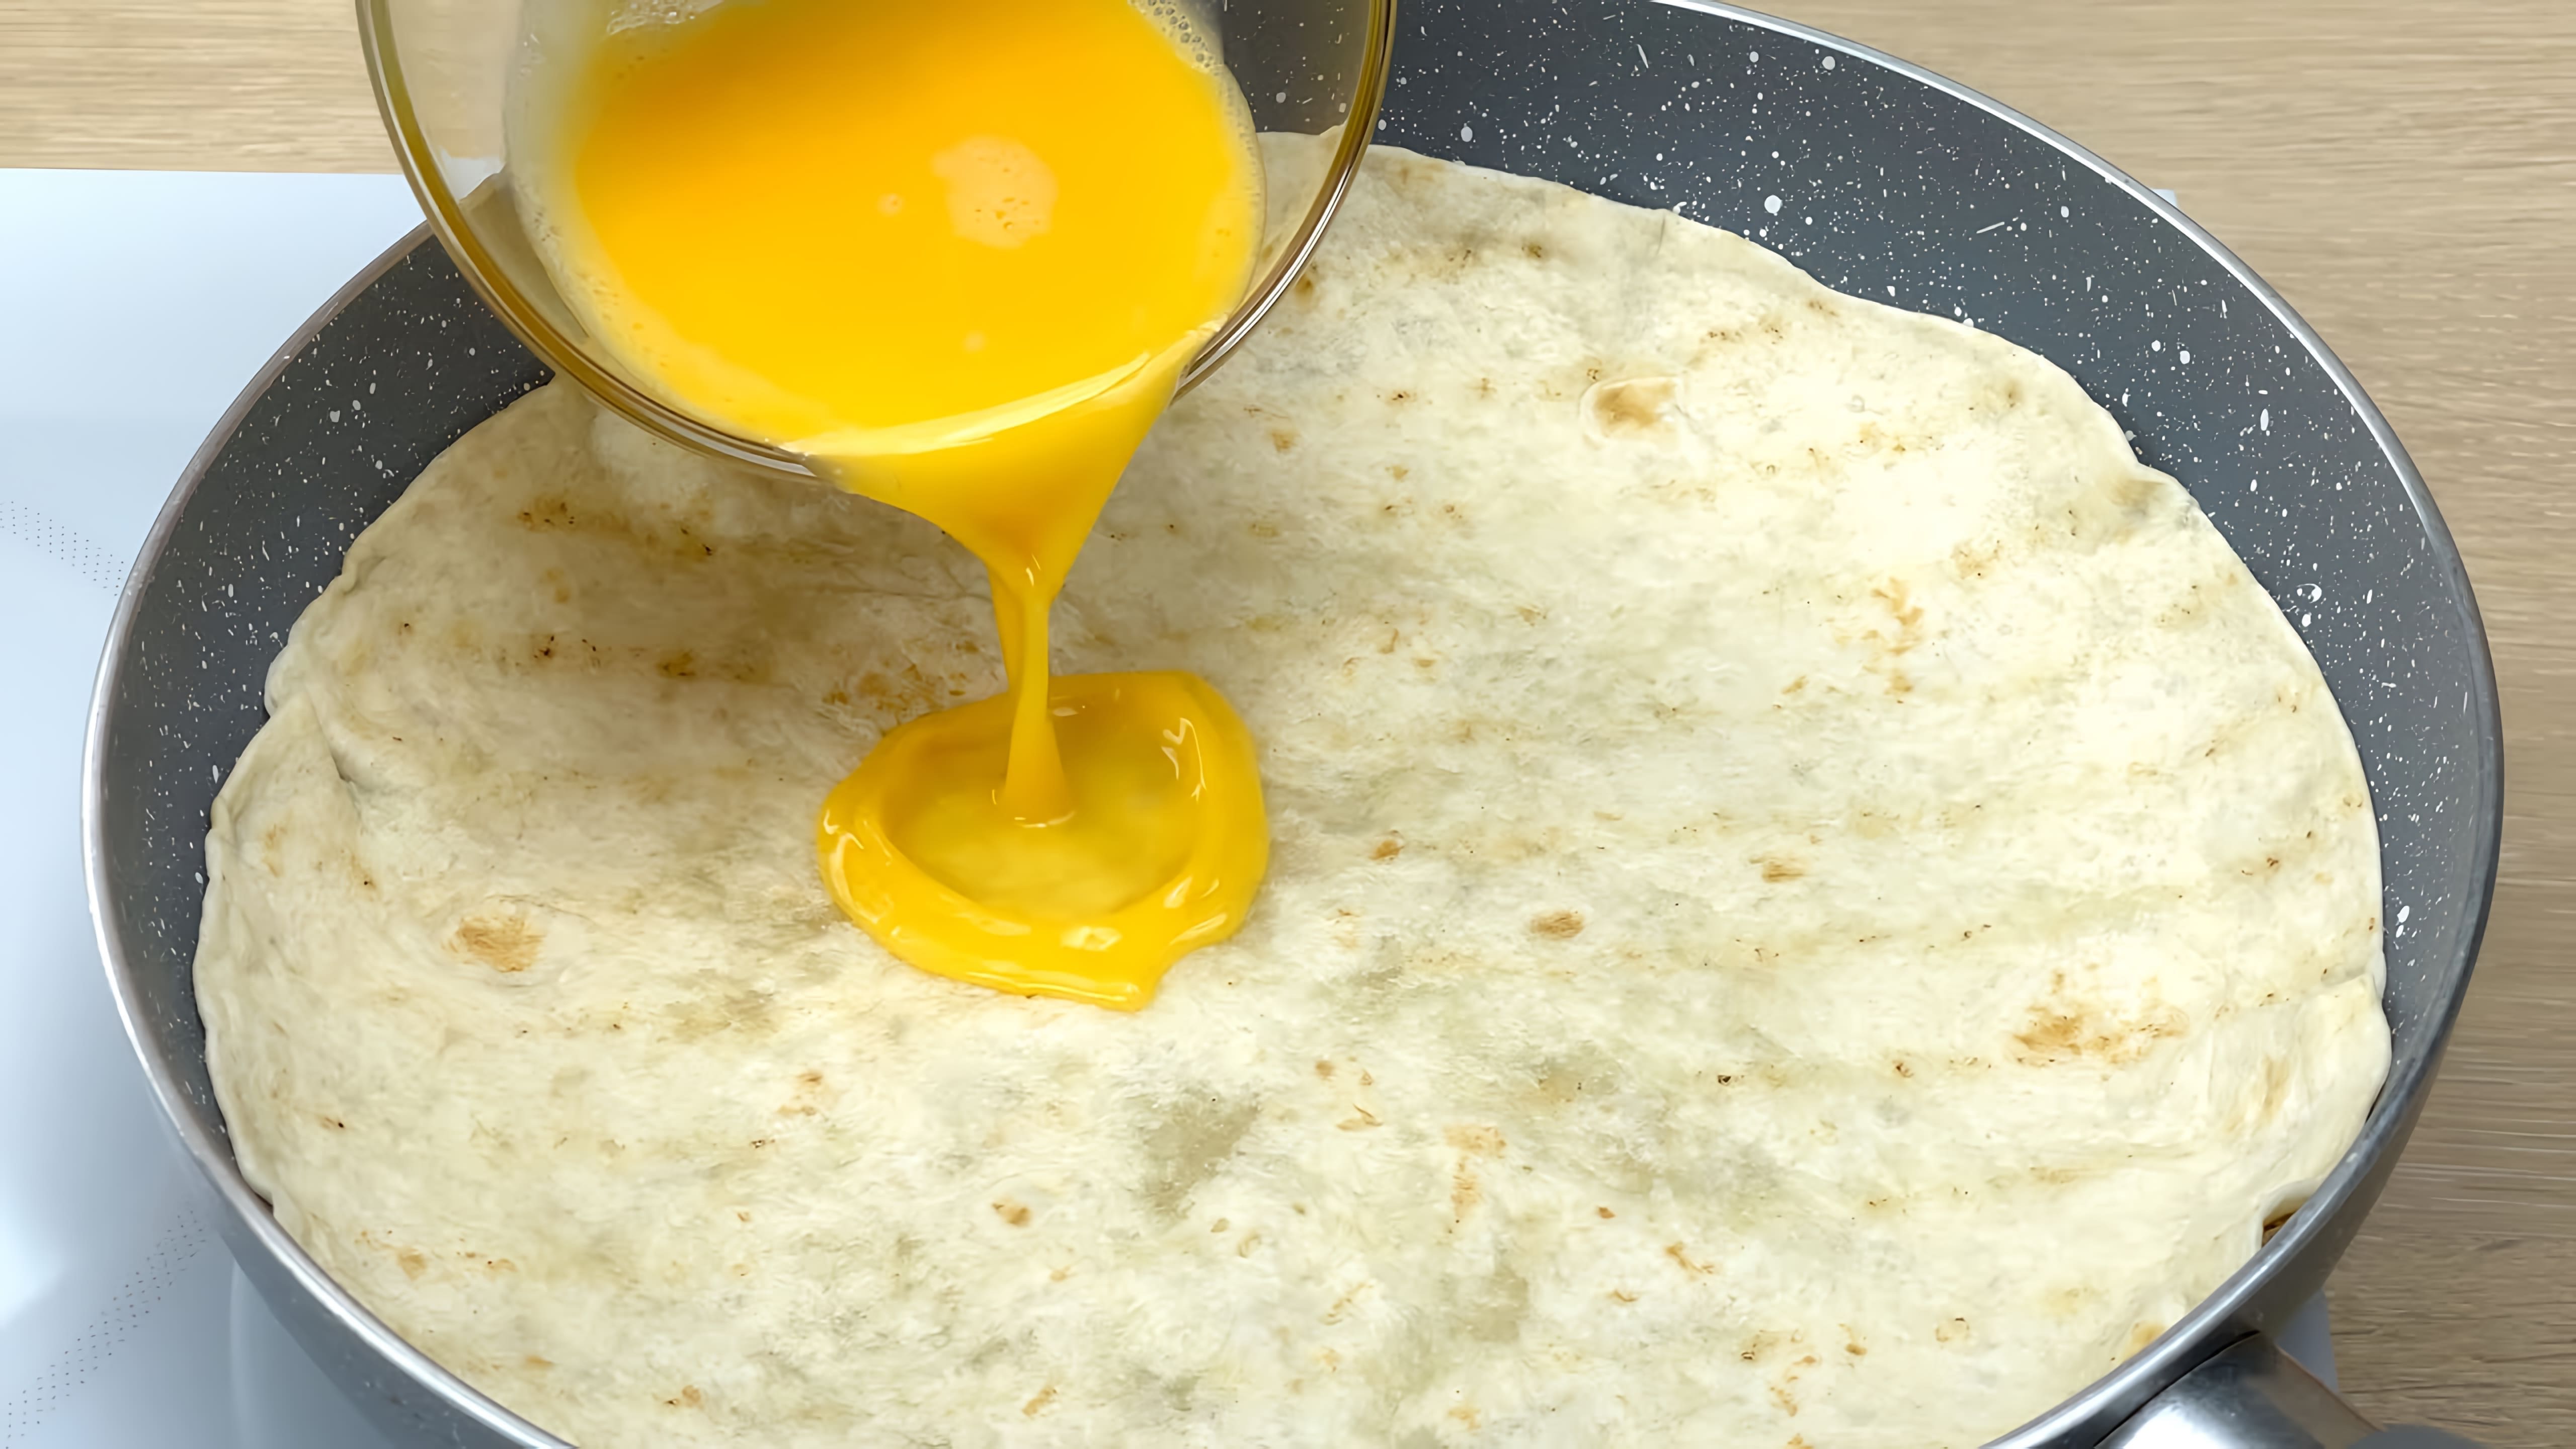 В данном видео демонстрируется процесс приготовления закуски из яиц и сыра